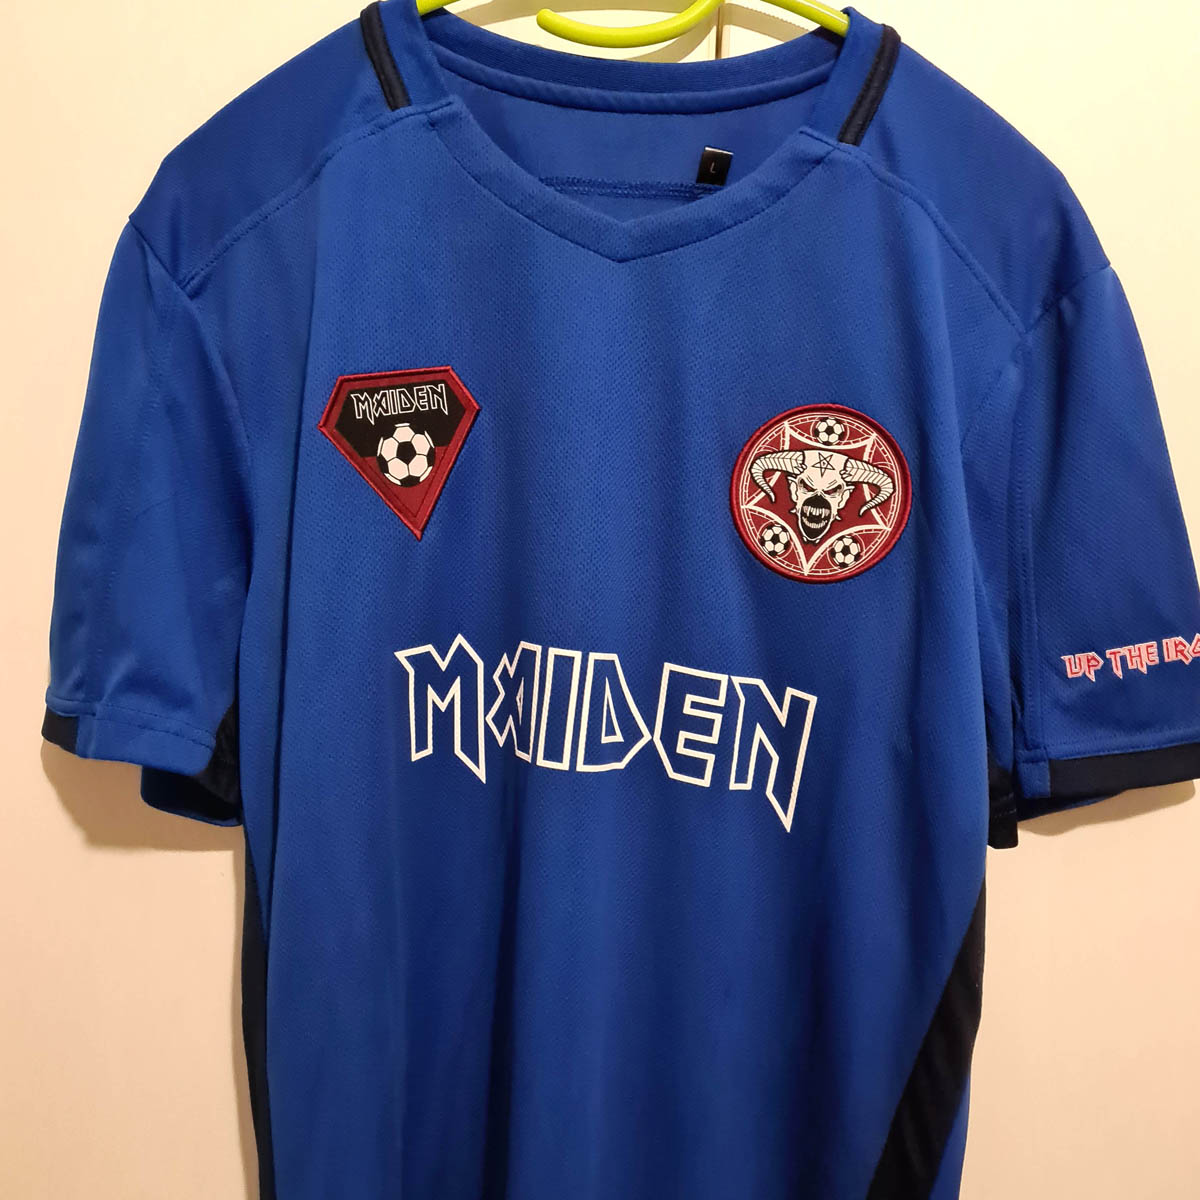 Iron Maiden - The new 2016 Maiden Football shirt has